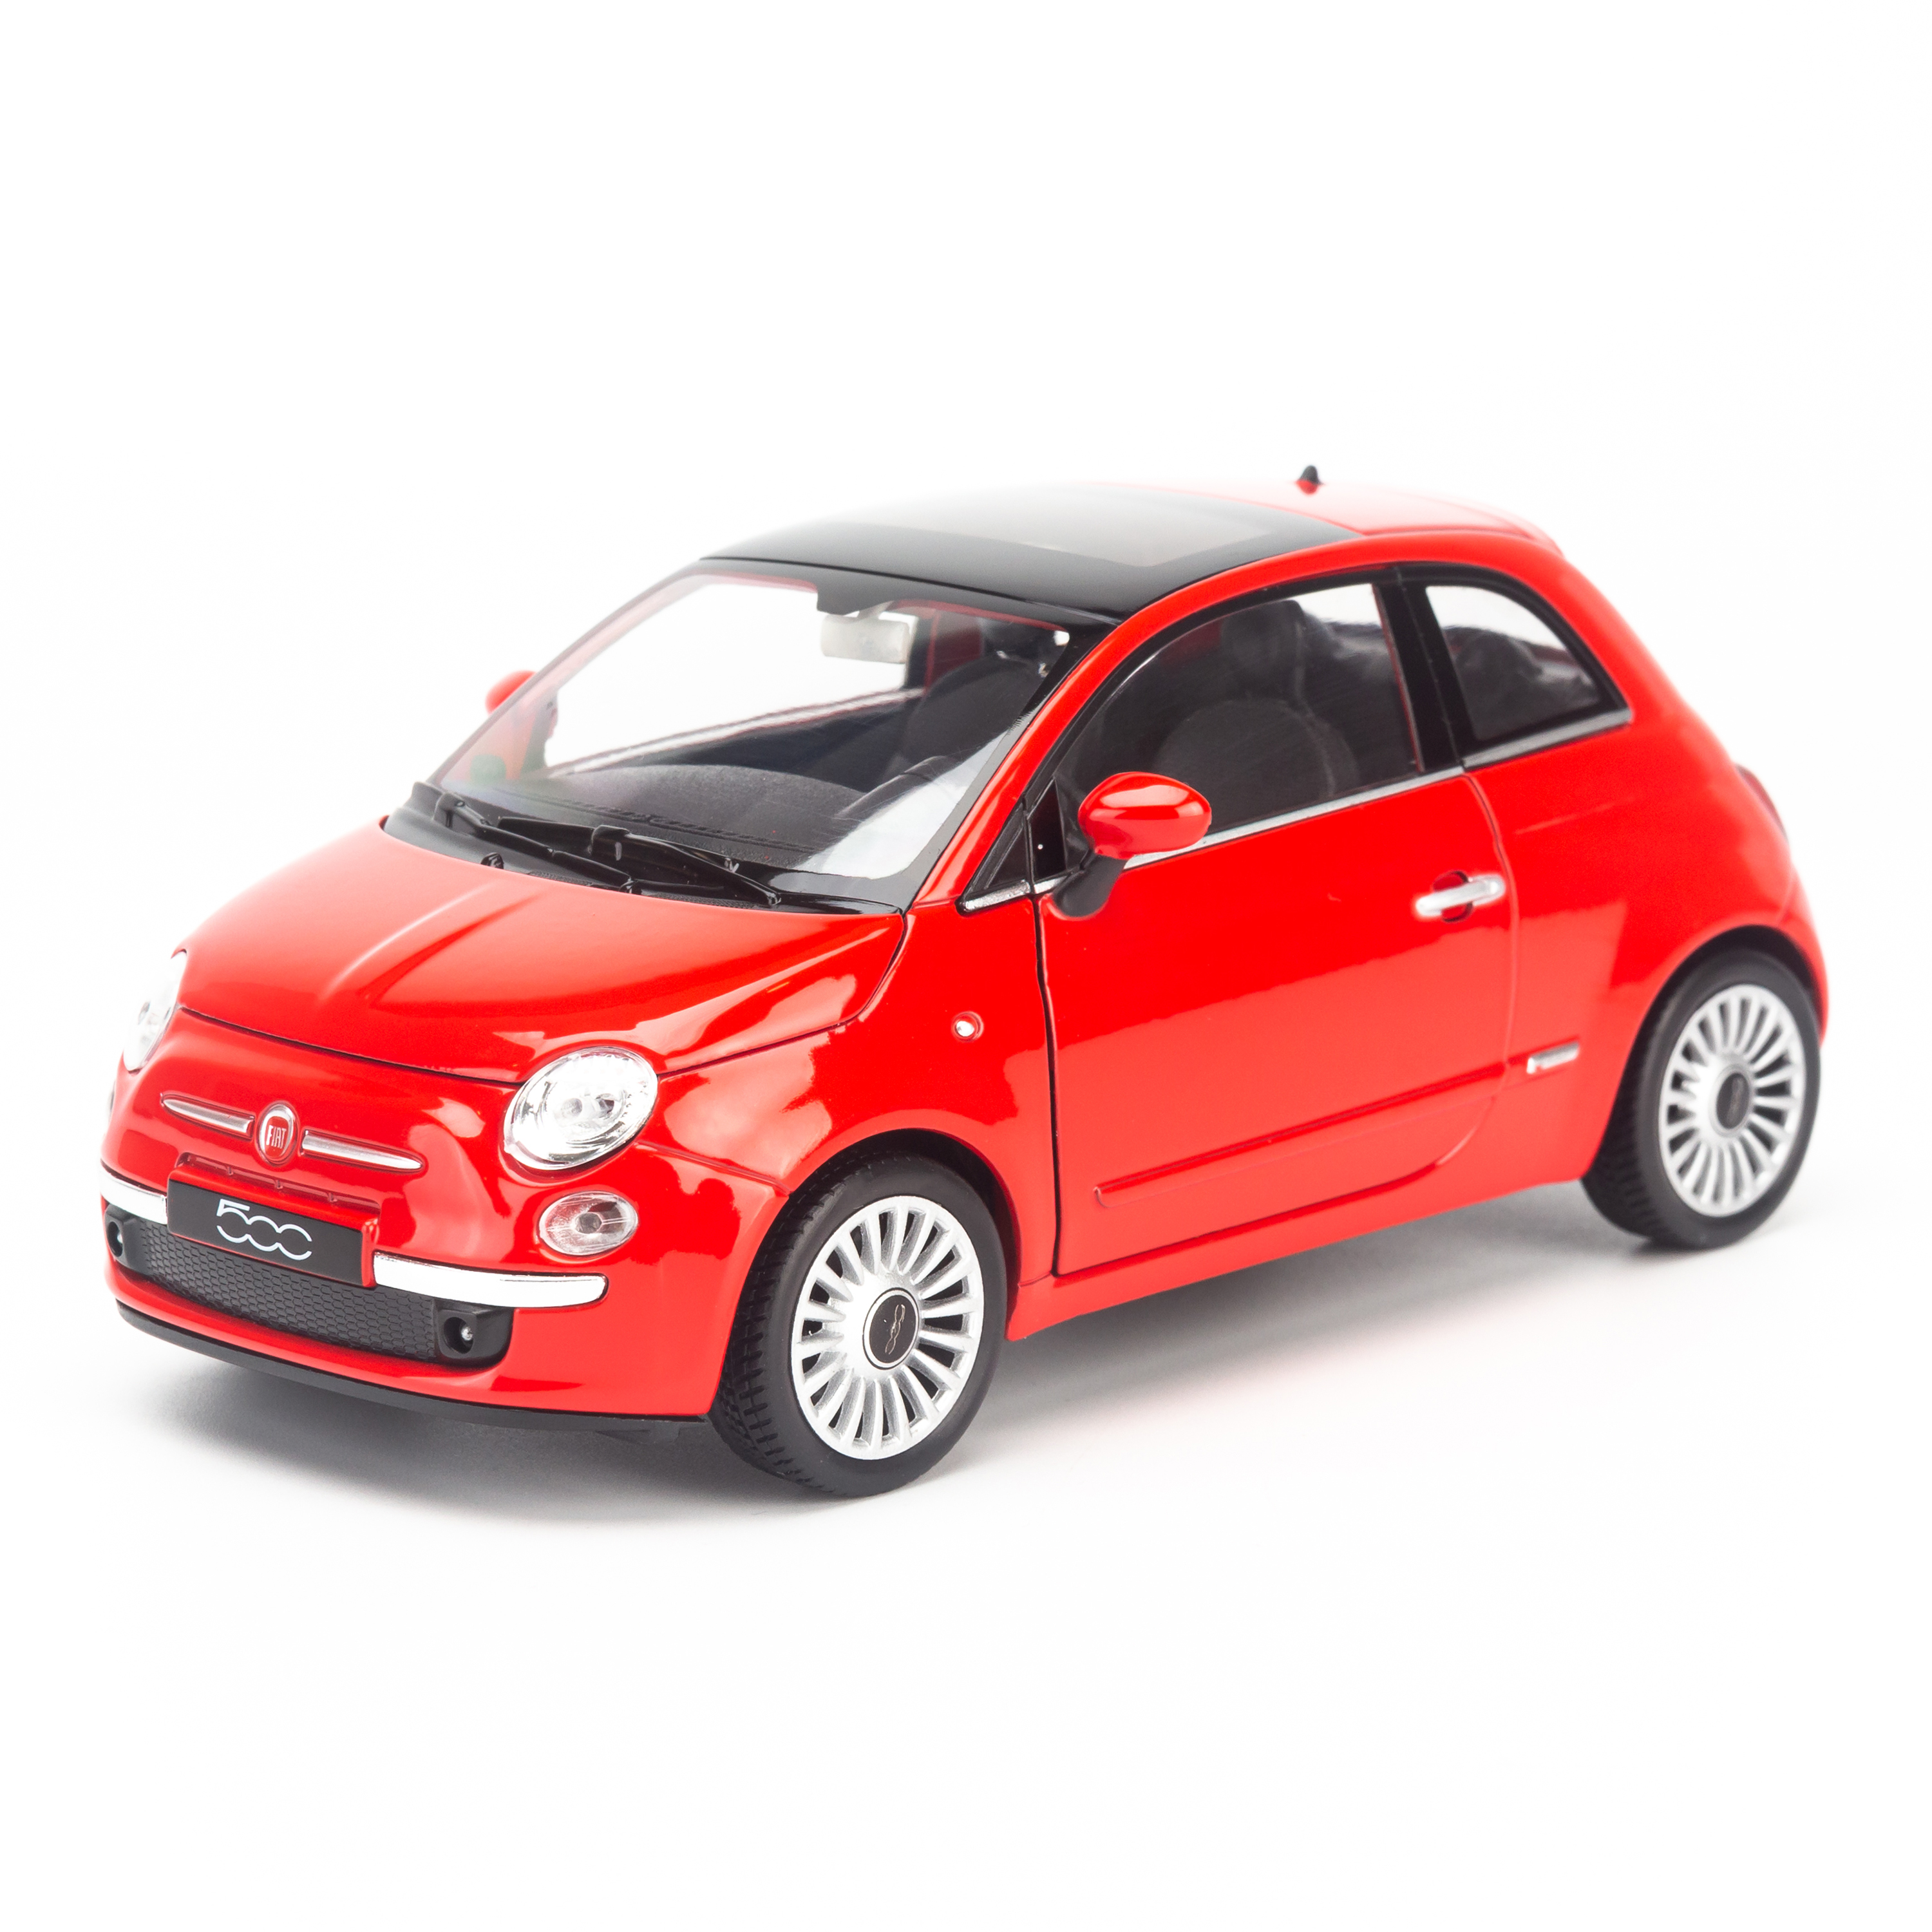 Hình ảnh Mô hình xe Fiat 500 2007 1:24 Welly Red - 22514W